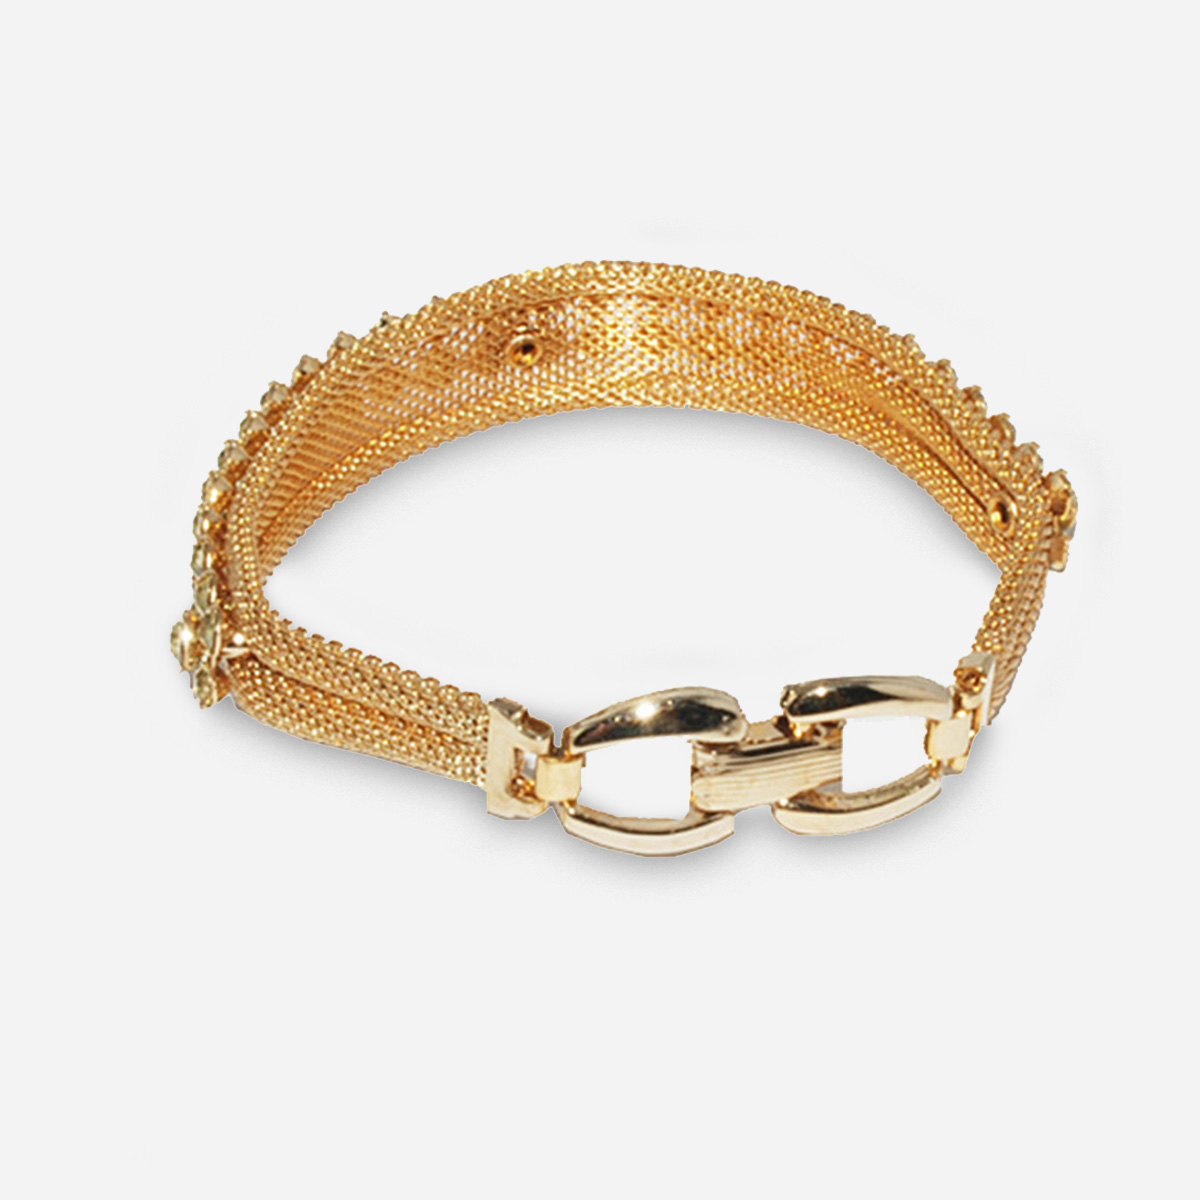 1950s gold mesh bracelet